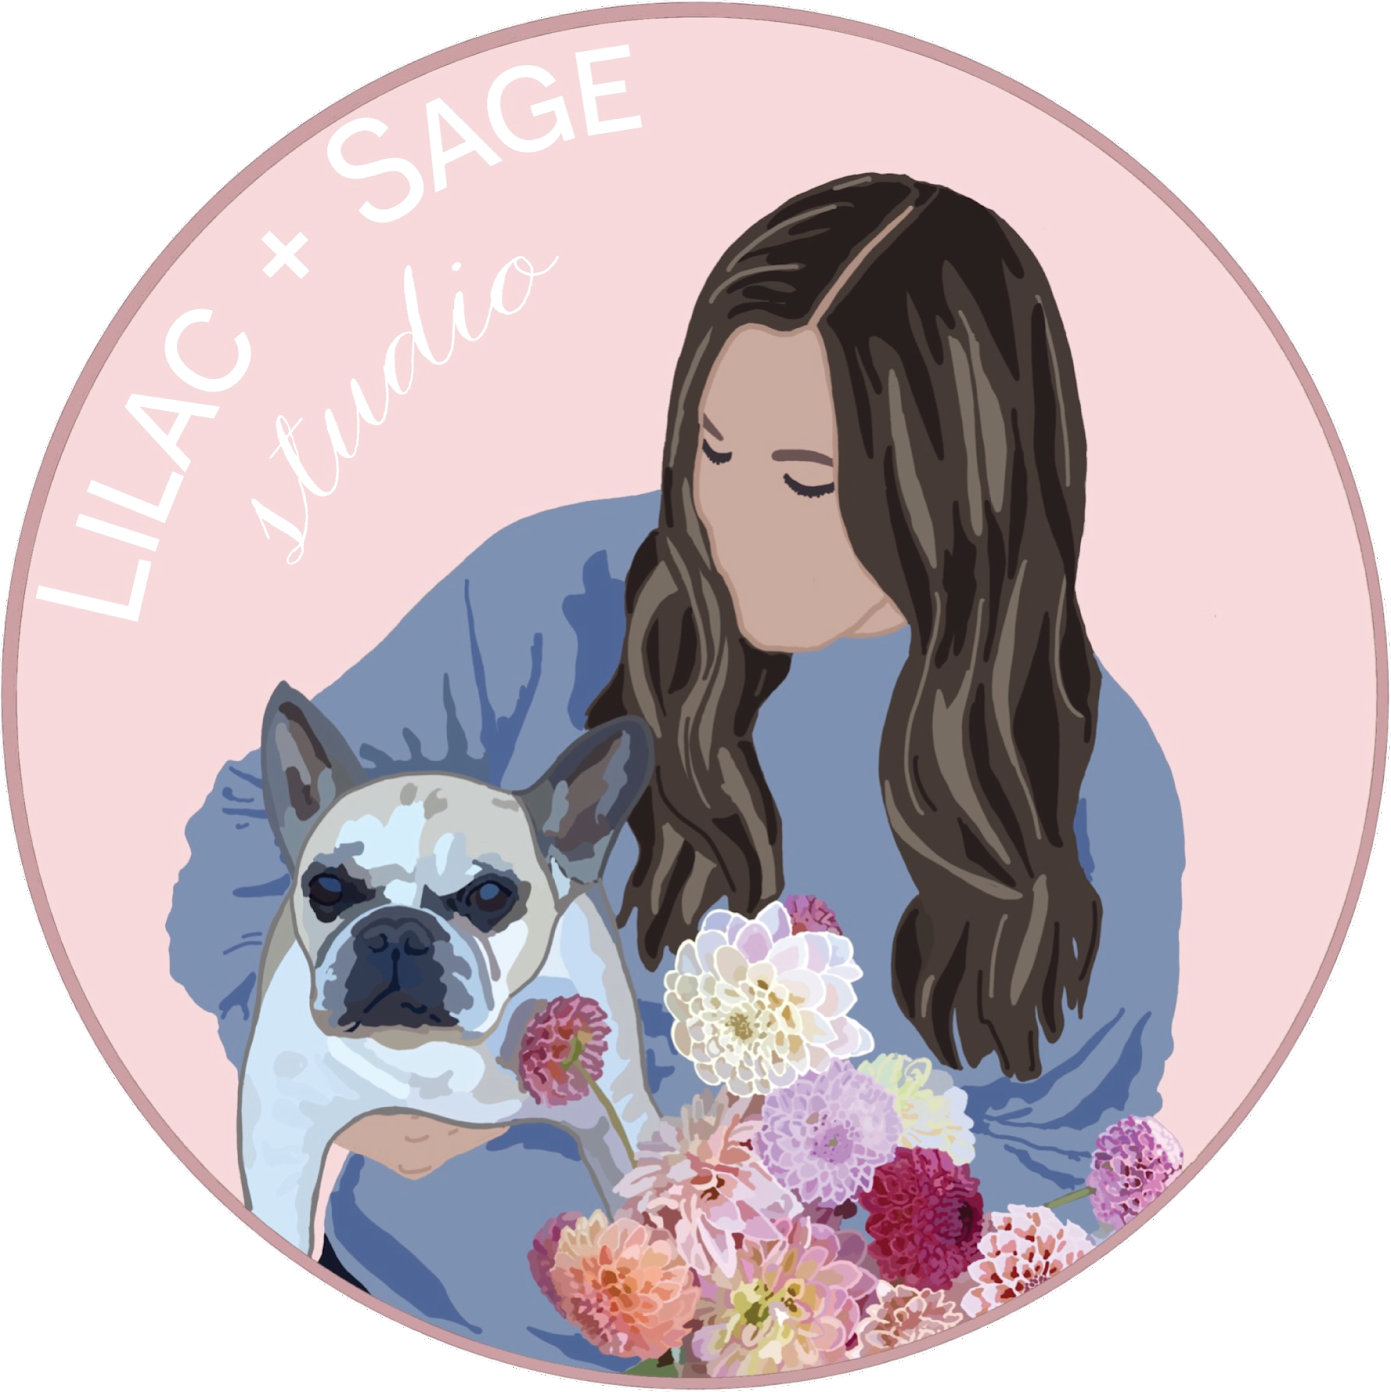 Lilac and Sage Studio